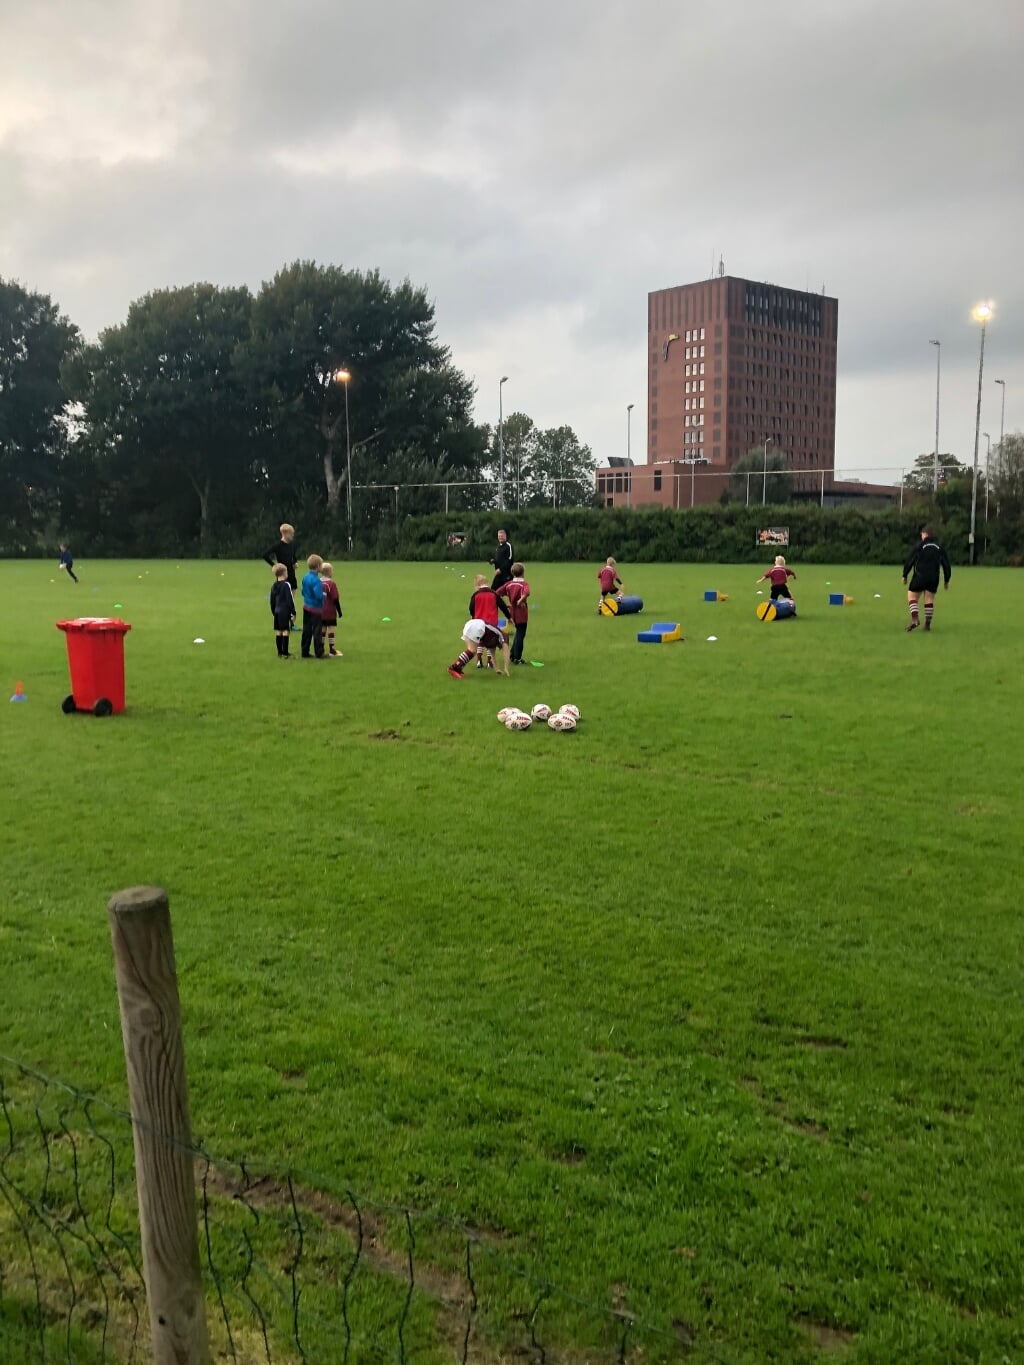 De rugbyvelden aan de Blauwe Berg in Hoorn.